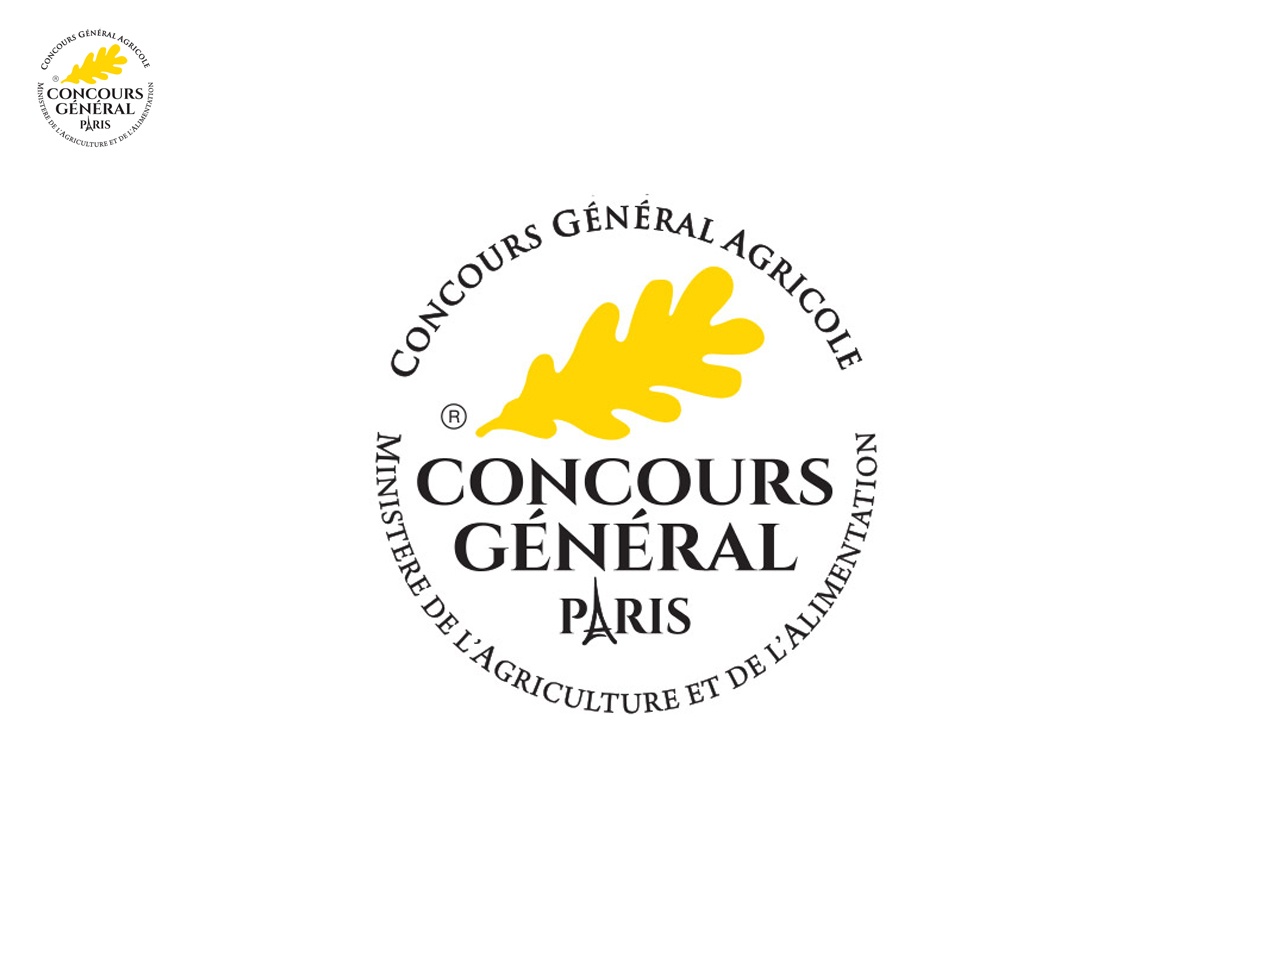 Concours Général Agricole : calendrier des formations 2019